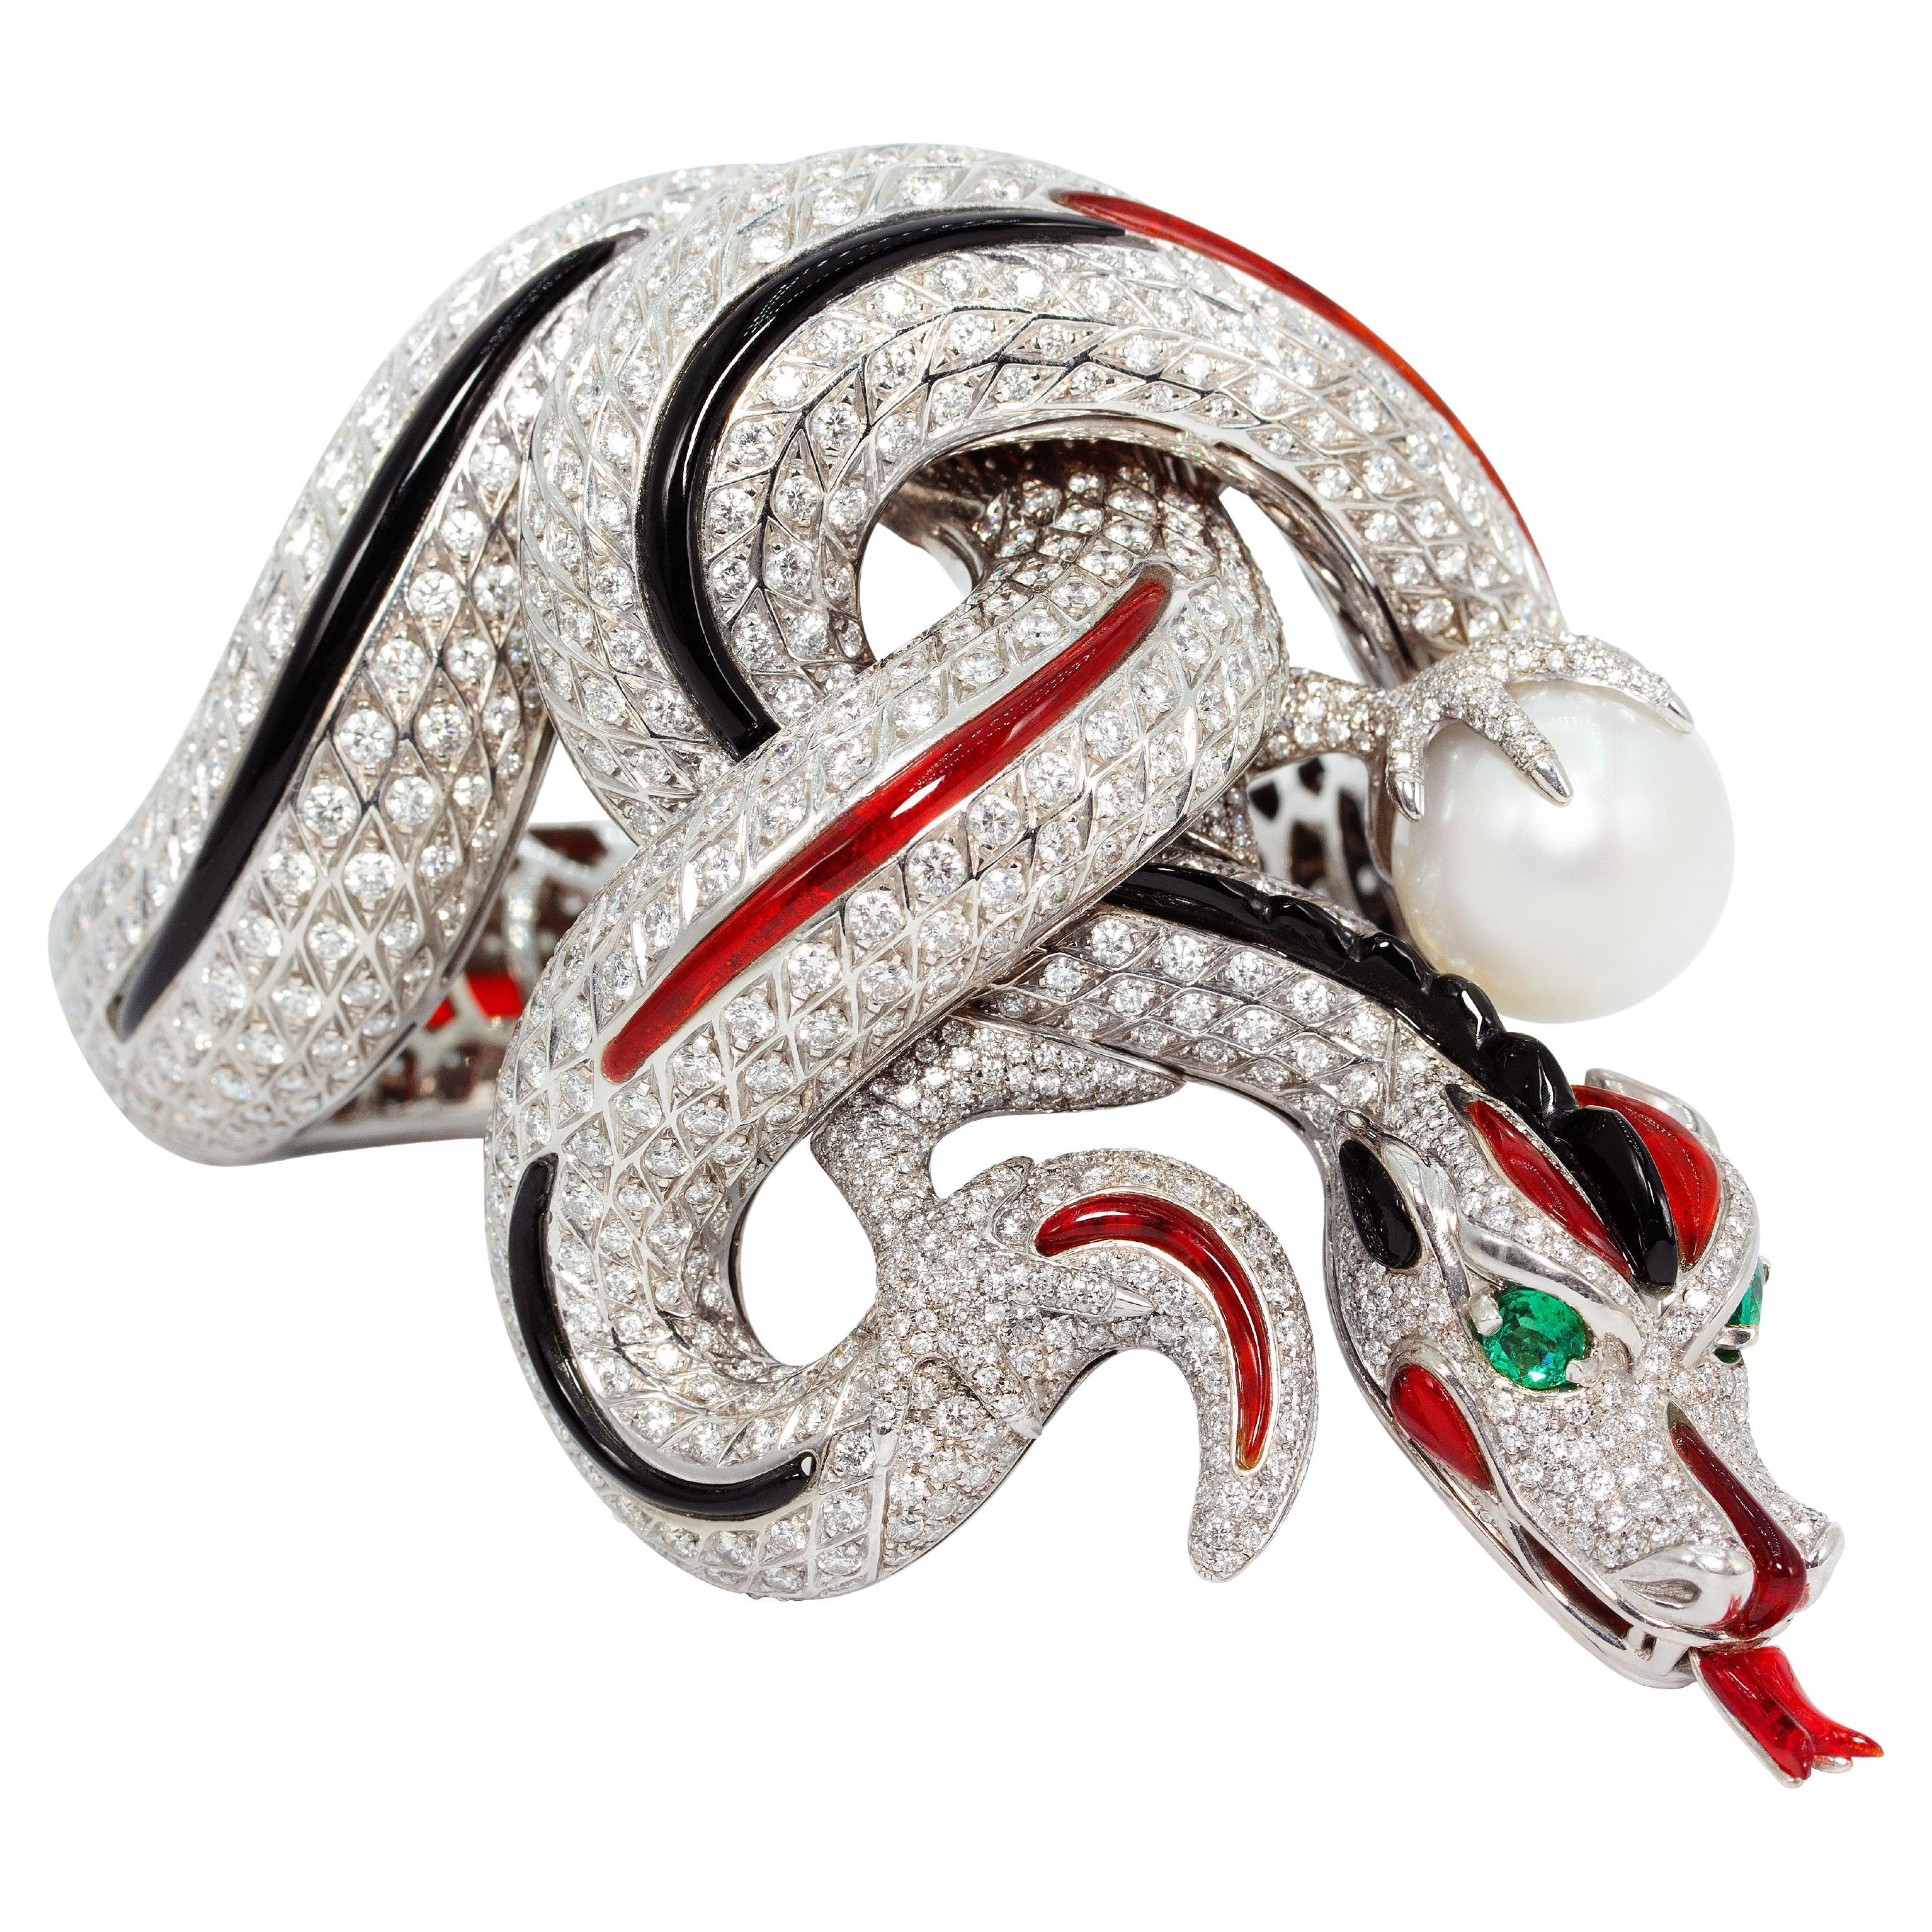 Ella Gafter "The Dragon" Objet d'Art Sculpture Cuff Bracelet For Sale